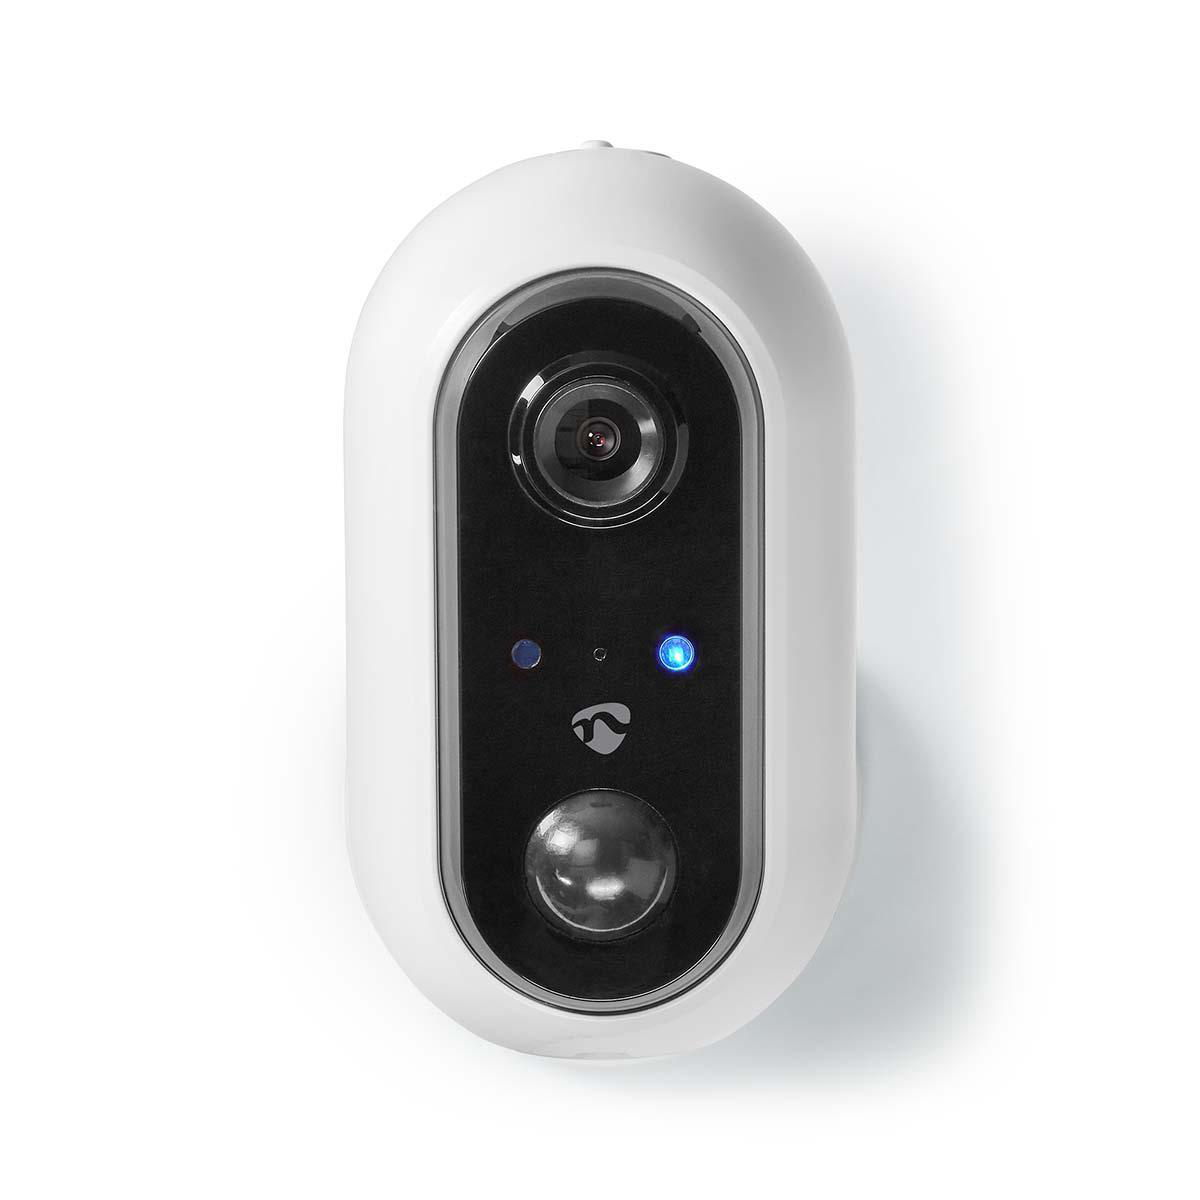 Questa telecamera Full HD Nedis® Smart IP è molto facile da usare, devi solo collegarla al tuo Wi-Fi e sei pronto per monitorare l'area esterna della tua casa, anche quando non sei a casa. L'alloggiamento IP65 impermeabile di questa telecamera in combinaz